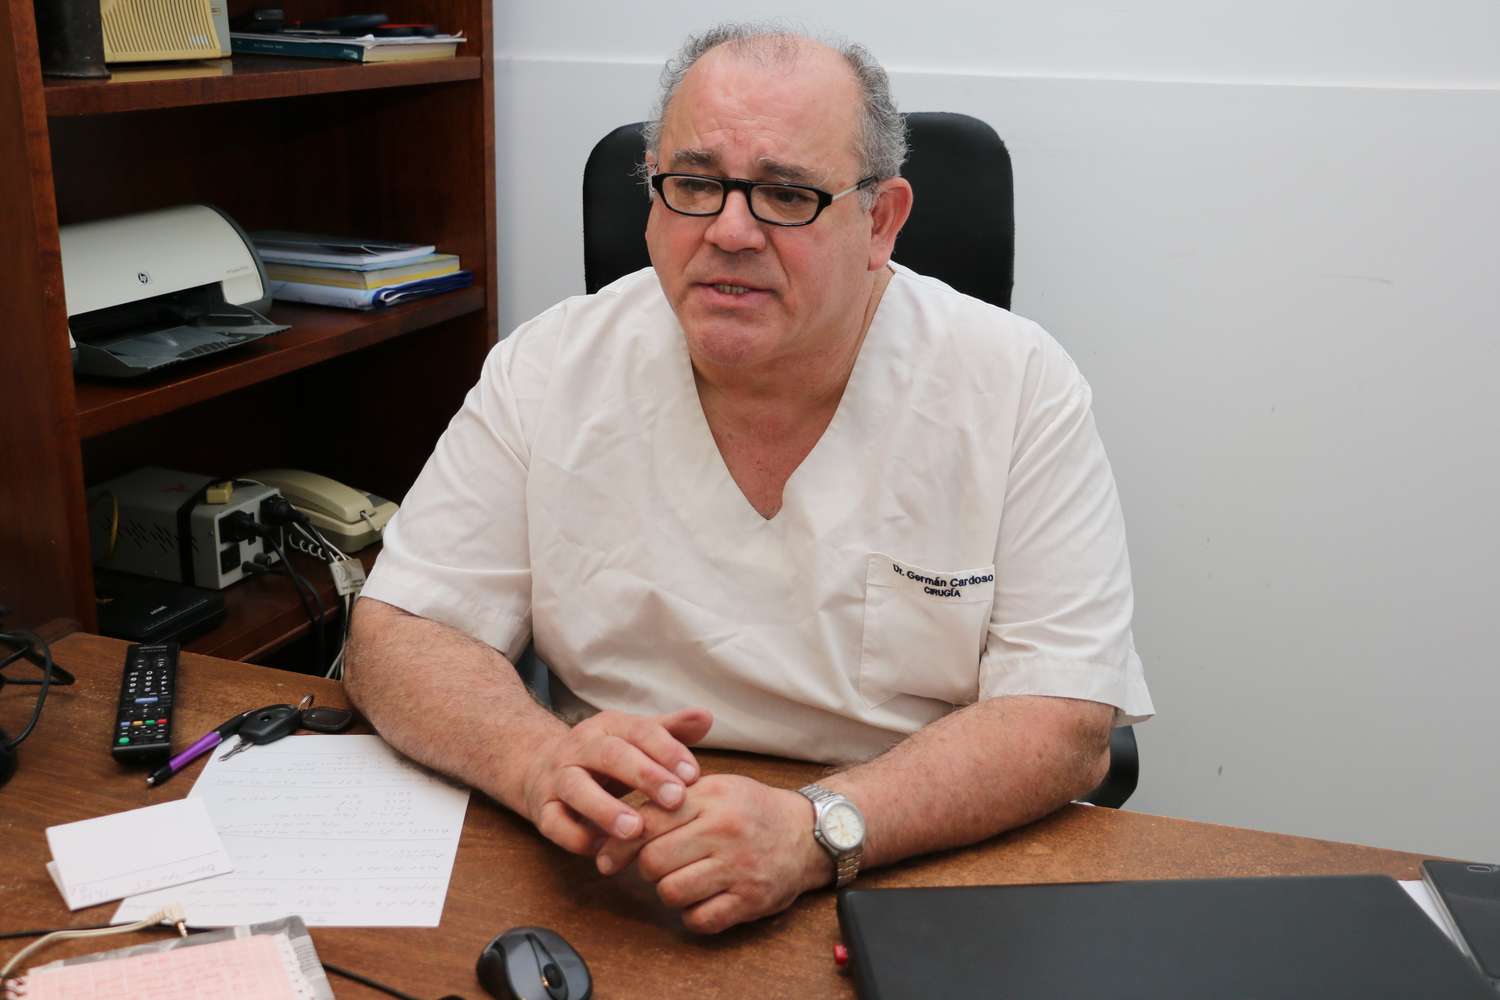 Germán Cardoso, el Dr. Aborto, asegura: “Hago lo mismo que en el Hospital”